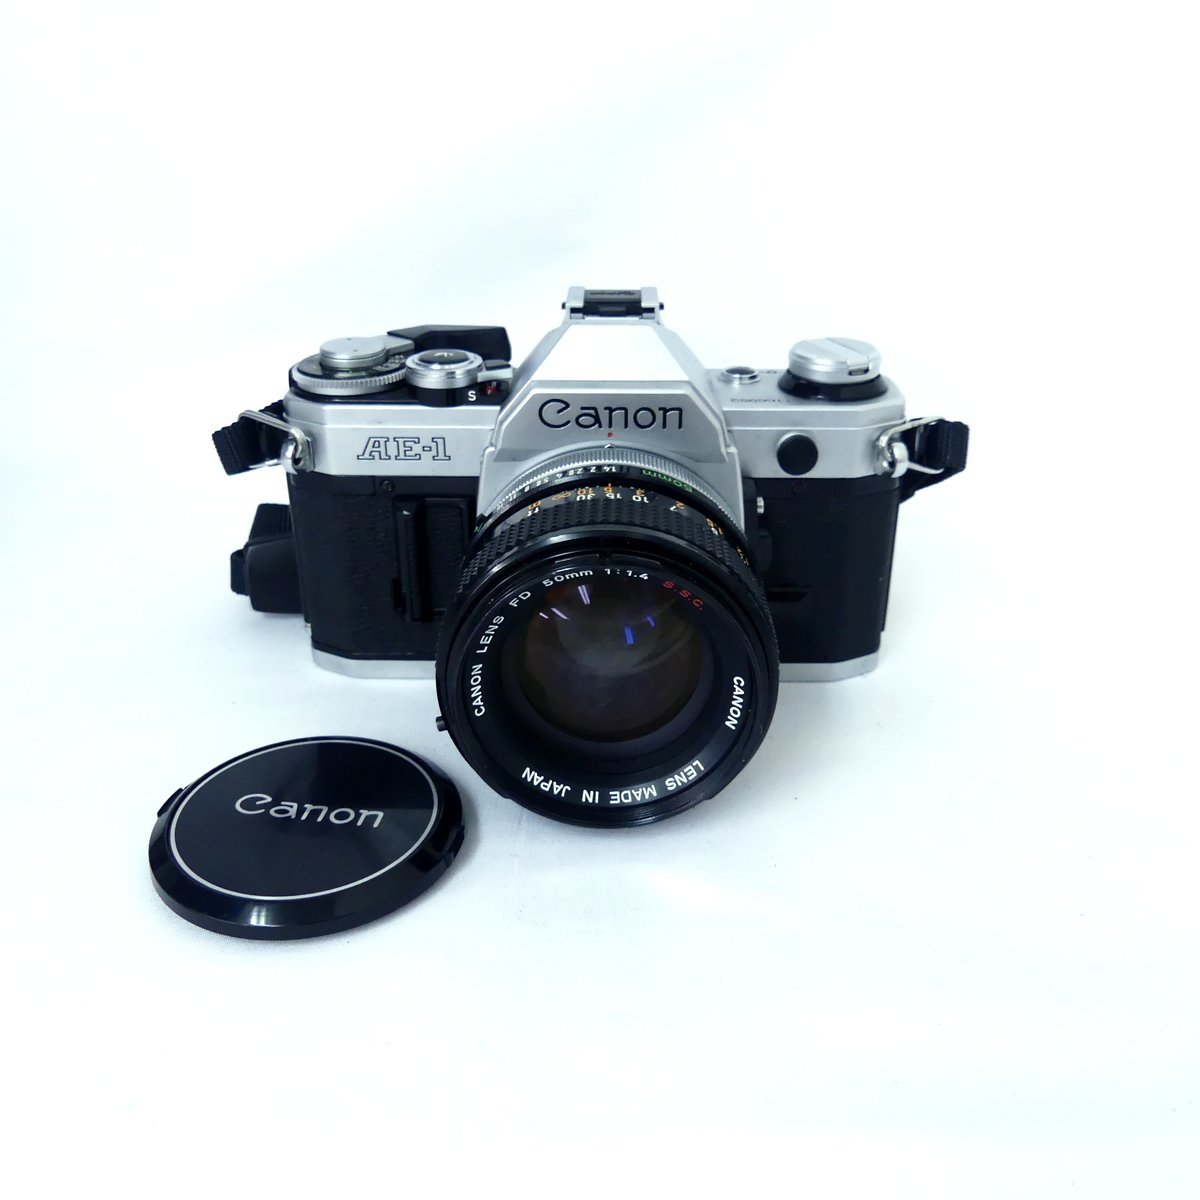 Canon キャノン AE-1 シルバー + FD 50mm F1.4 S.S.C. フィルムカメラ 